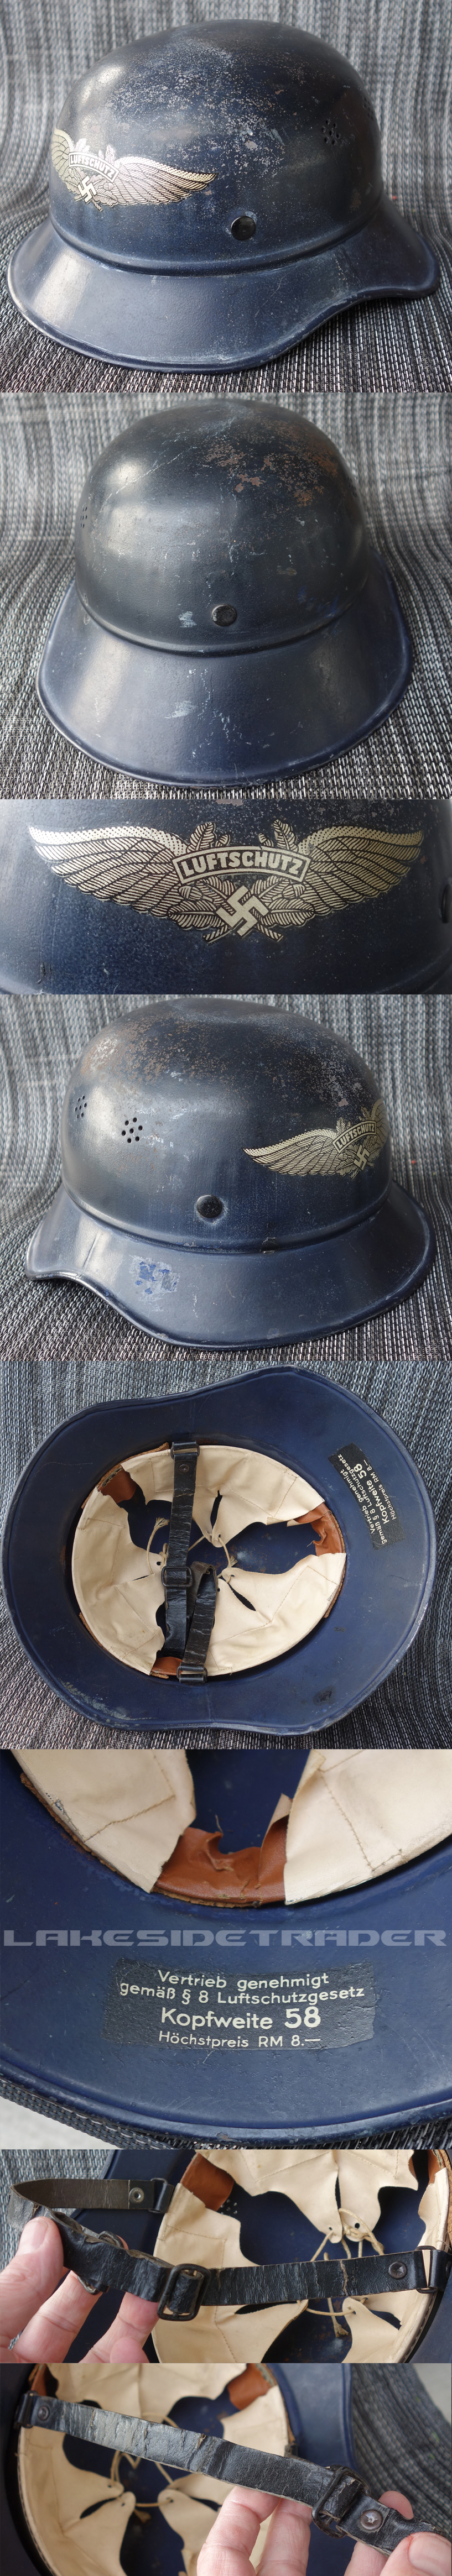 M38 Luftschutz Helmet Shell